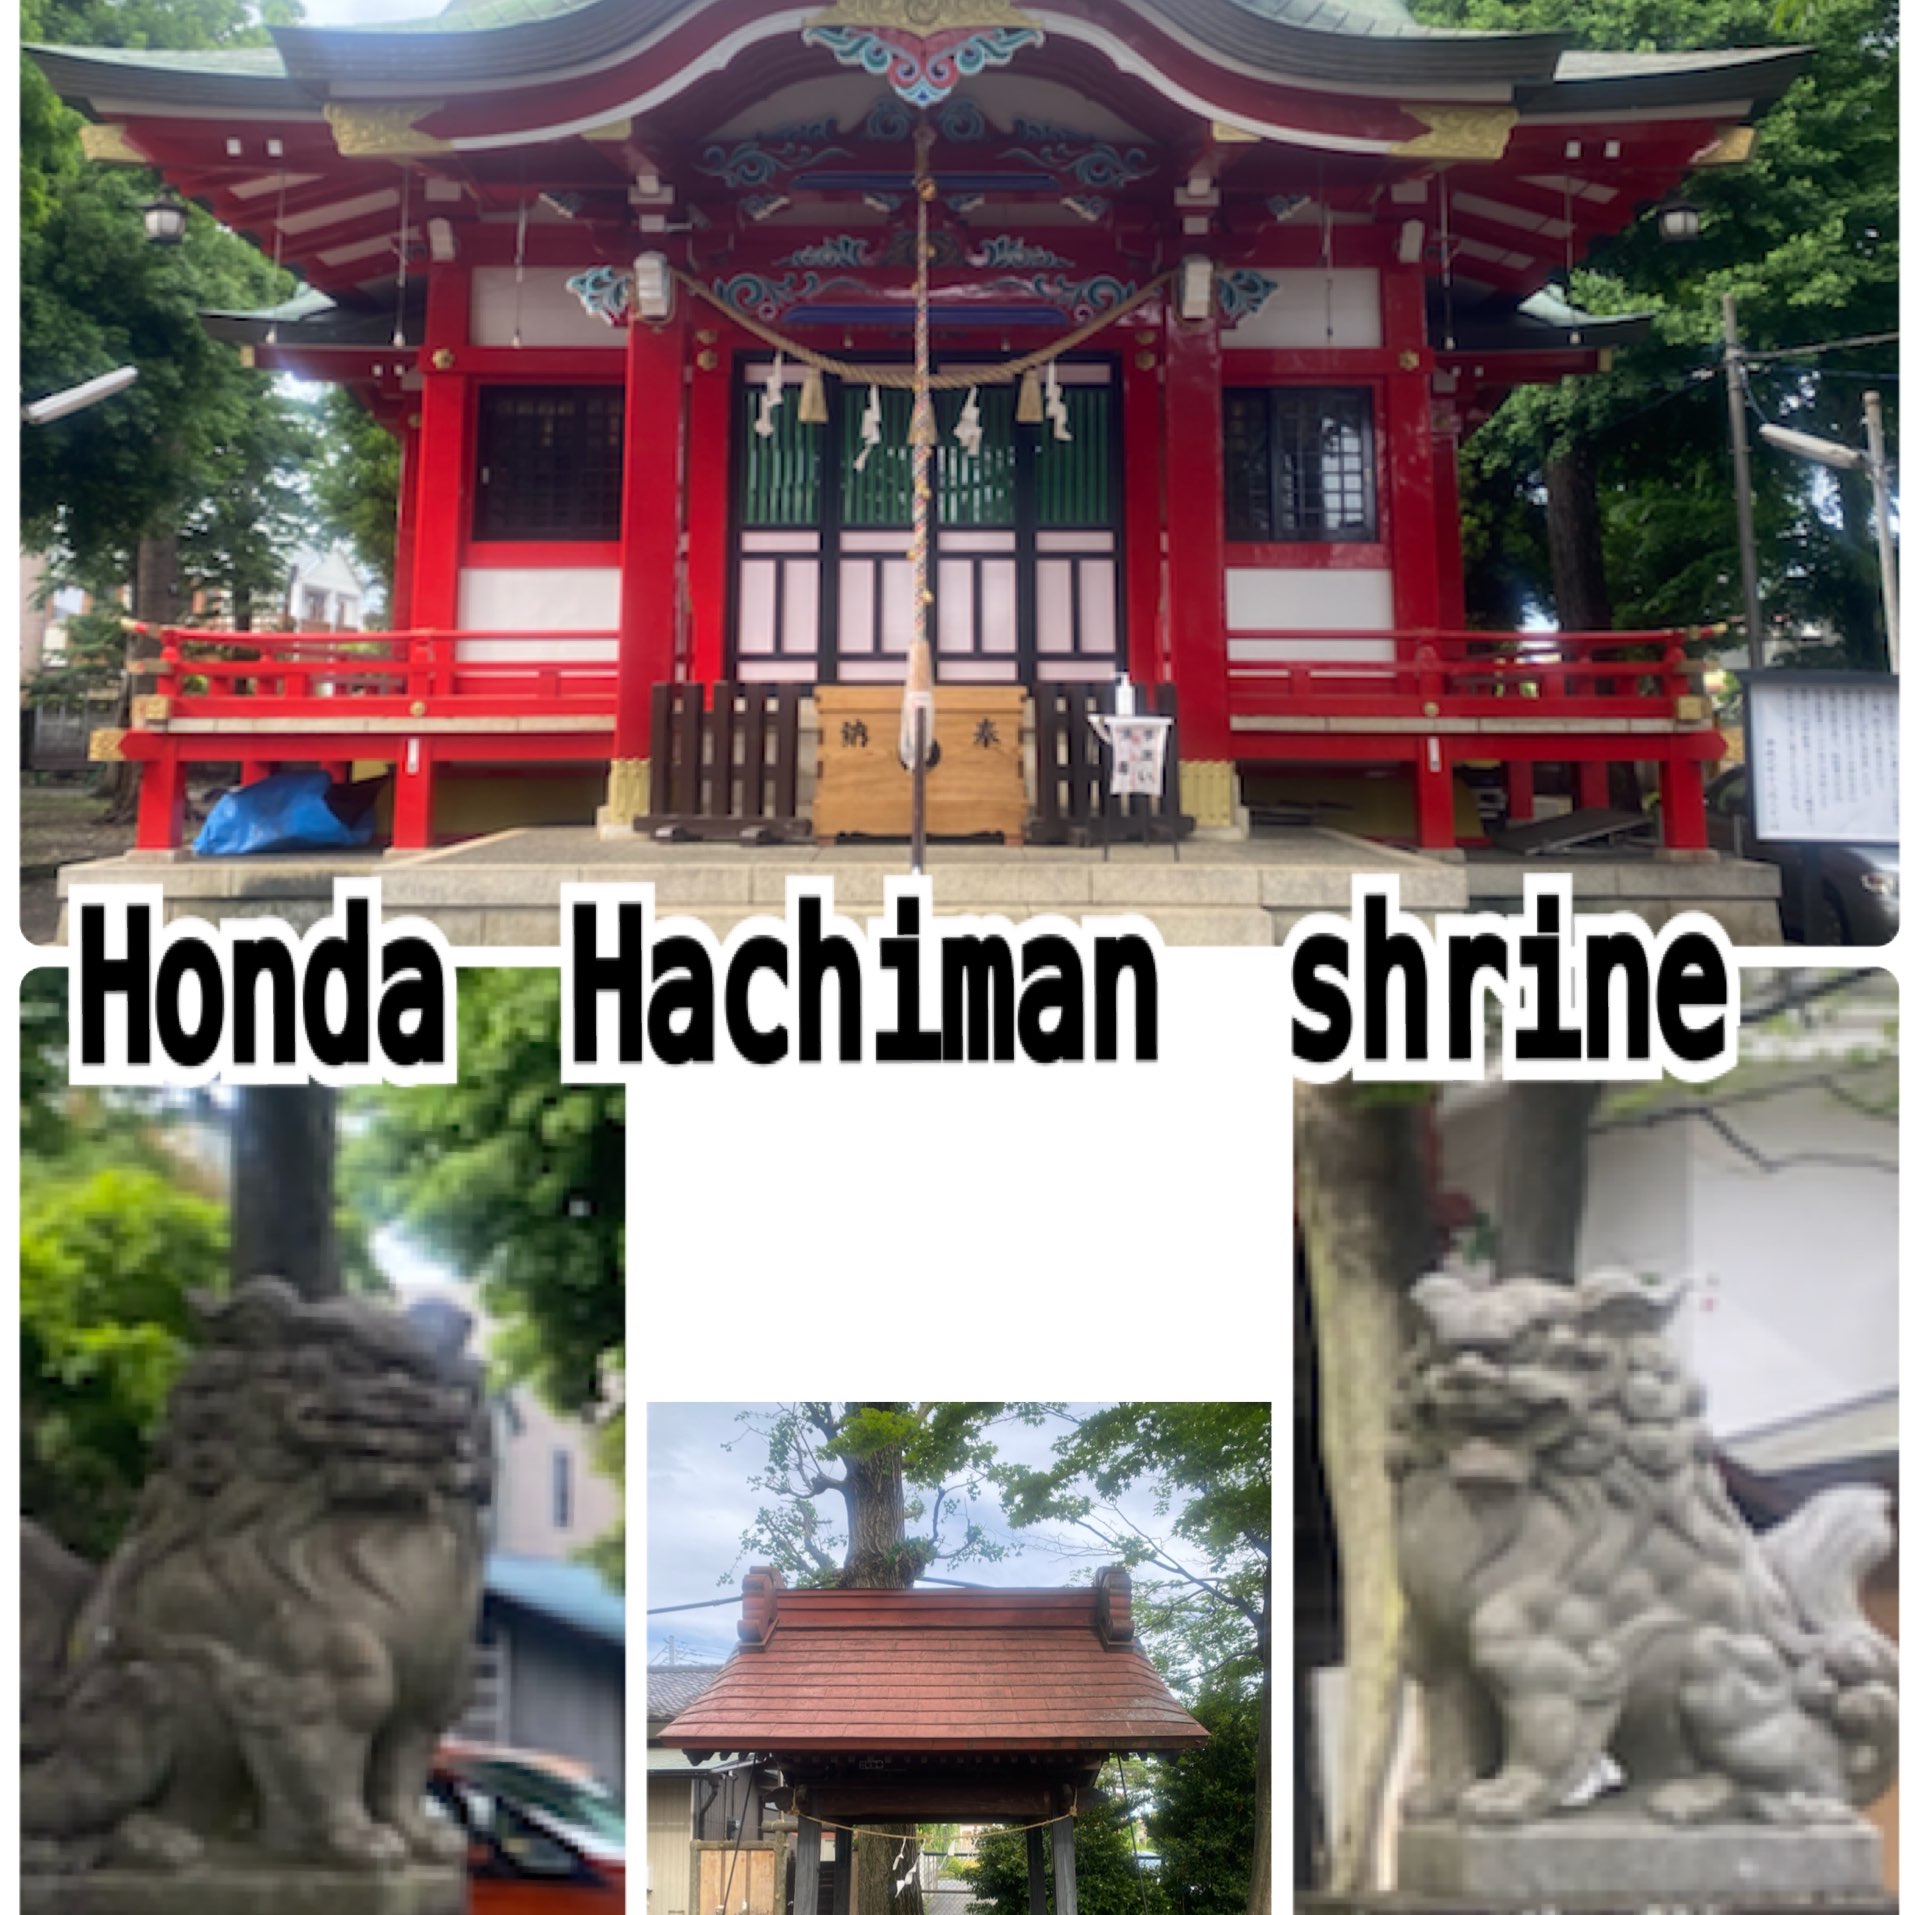 本多八幡神社 东京 国分寺市 Honda Hachiman shrine